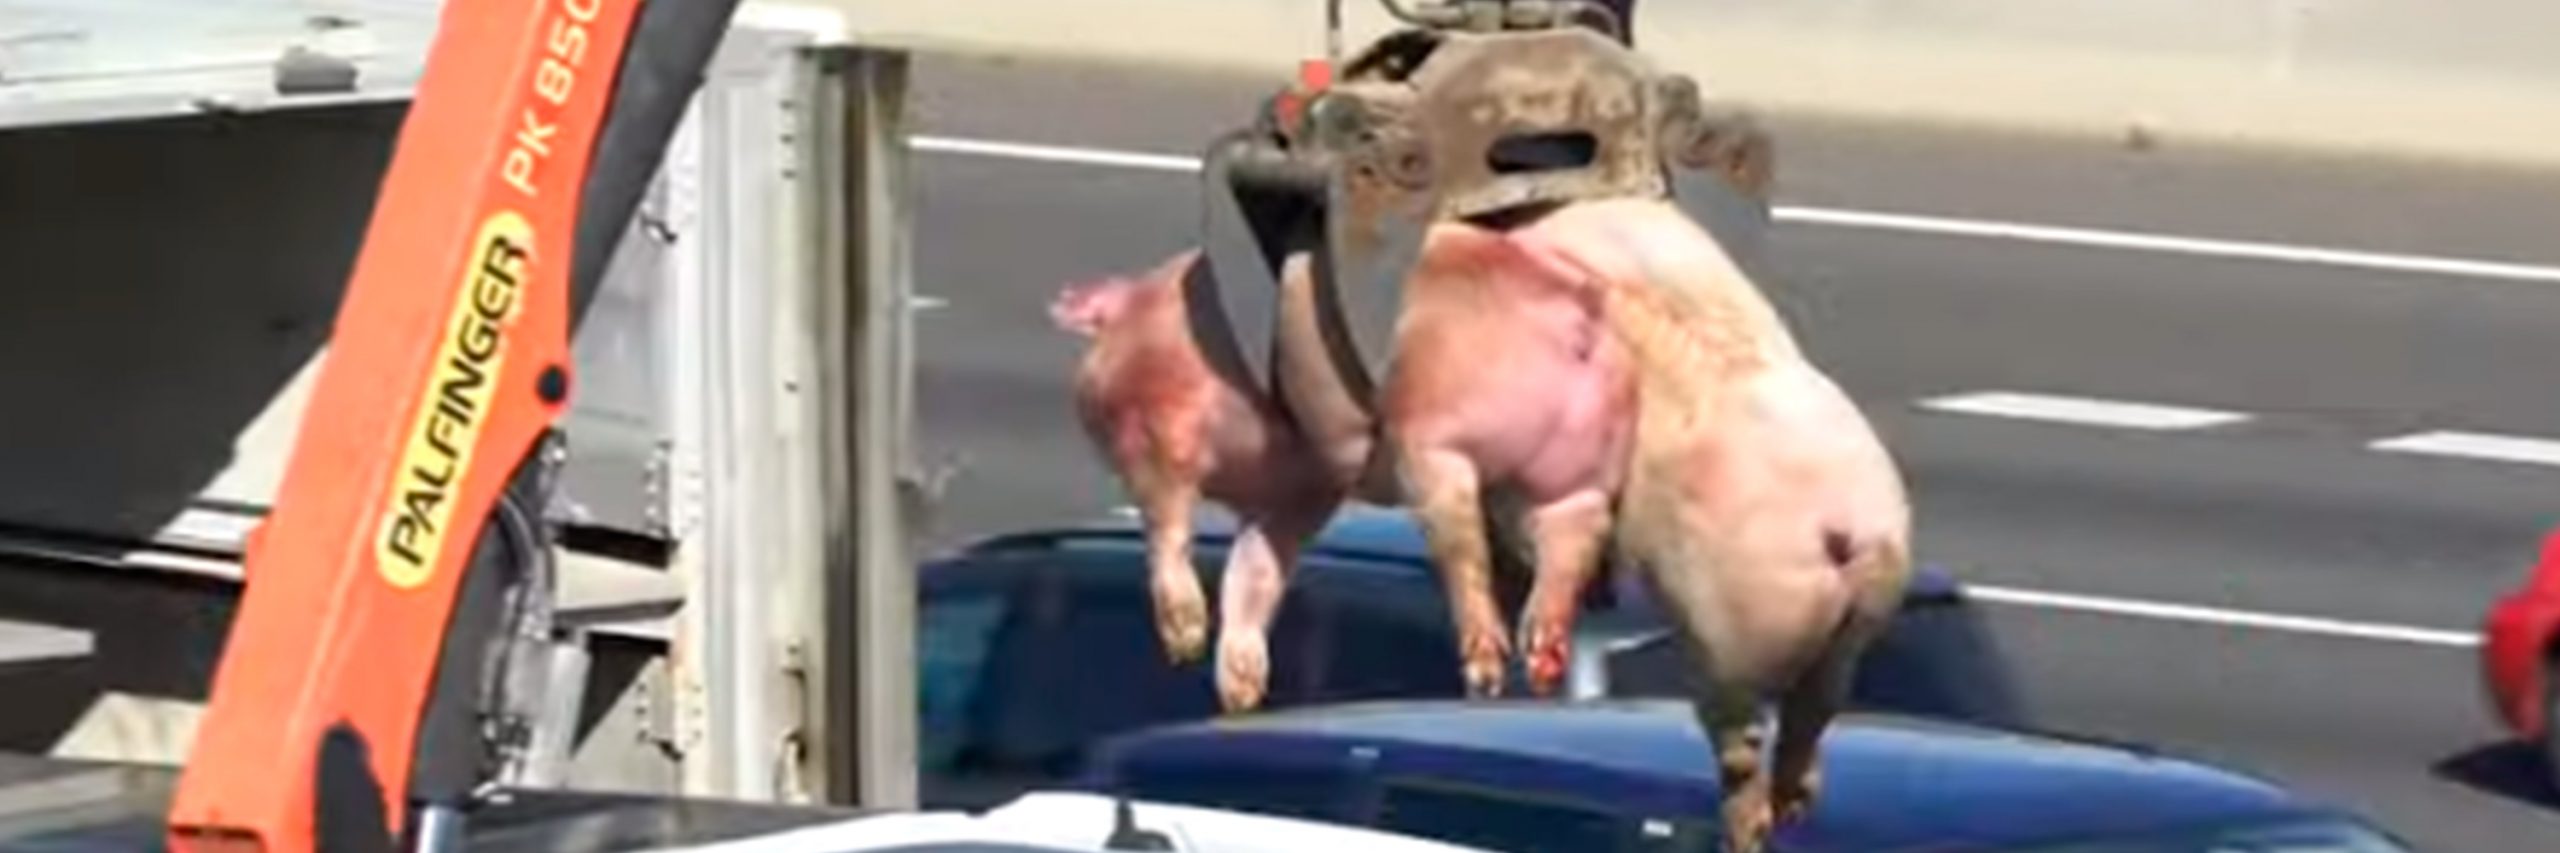 Cerdos en camión volcado